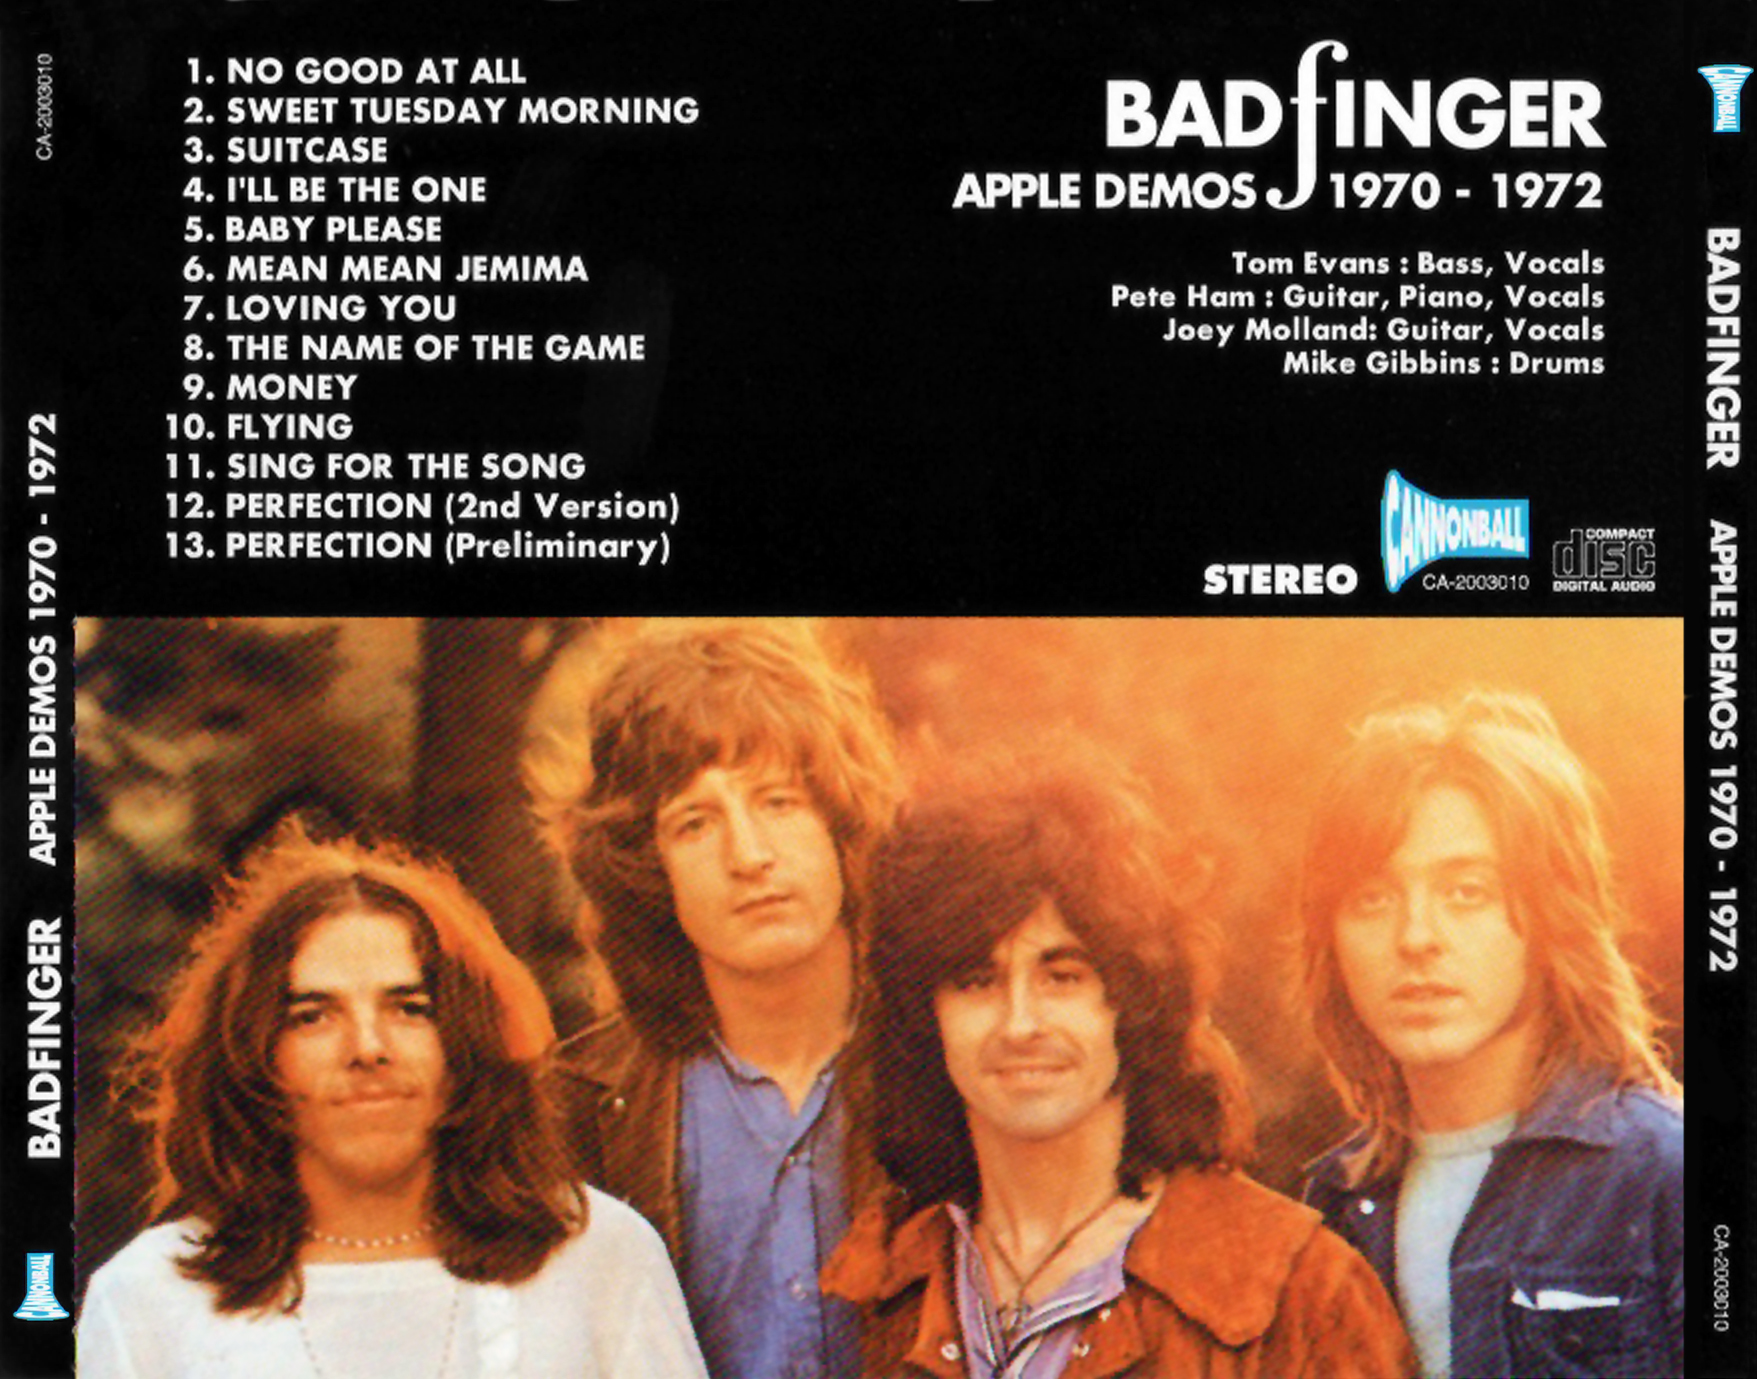 BADFINGER Apple Demos 1970 - 1970 back.jpg